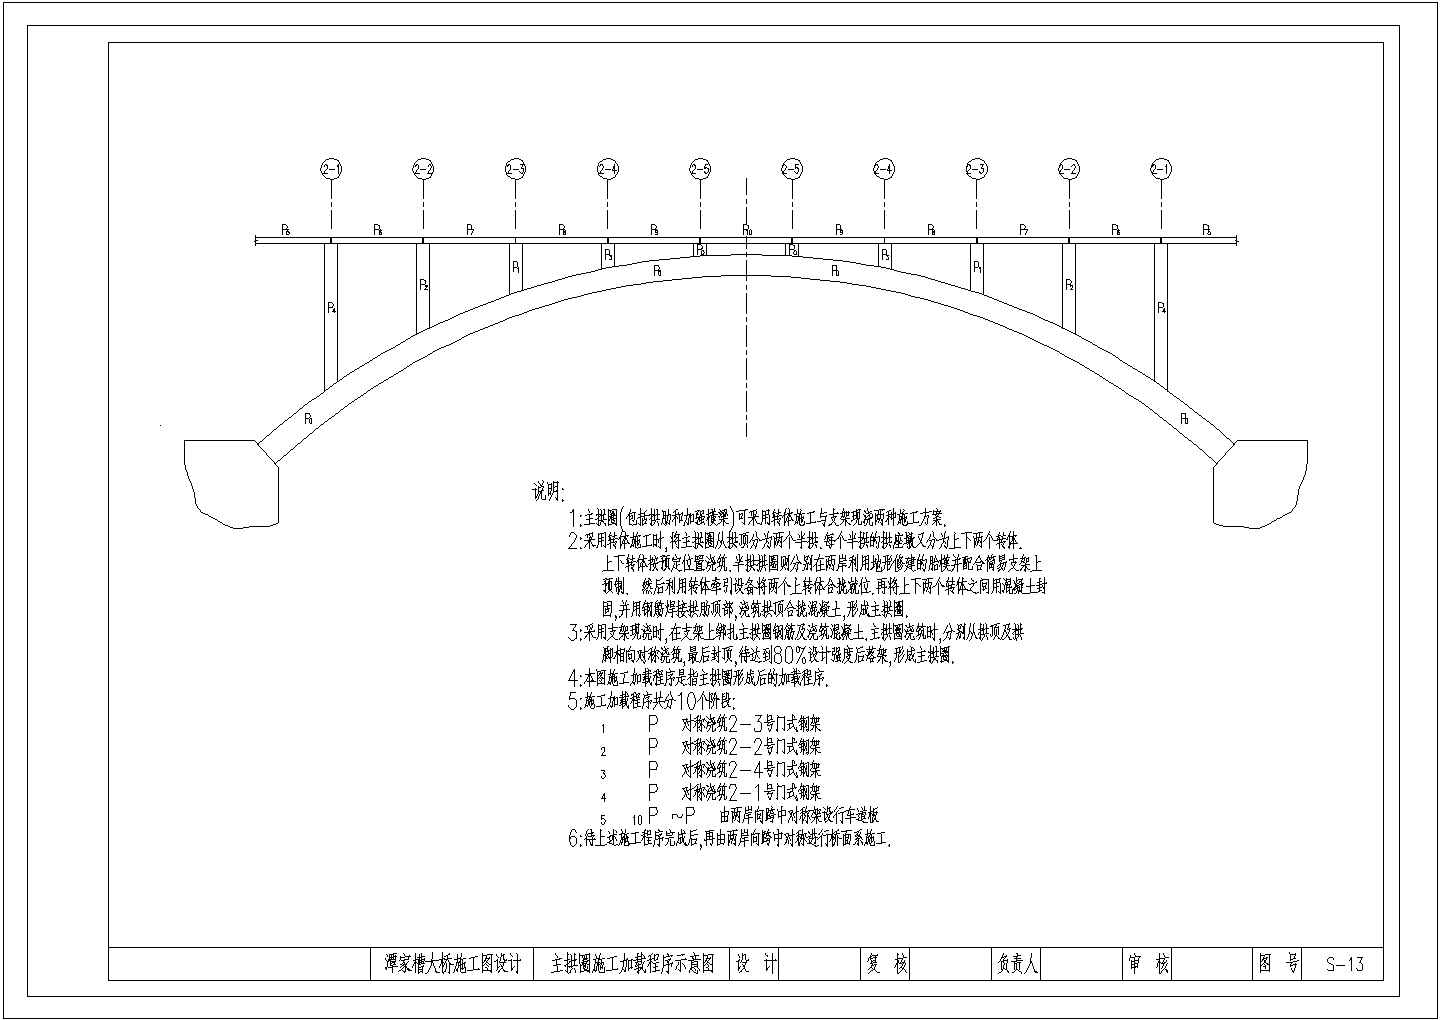 某县大桥1-50m箱形变截面悬链线肋拱主拱圈施工加载程序CAD示意图